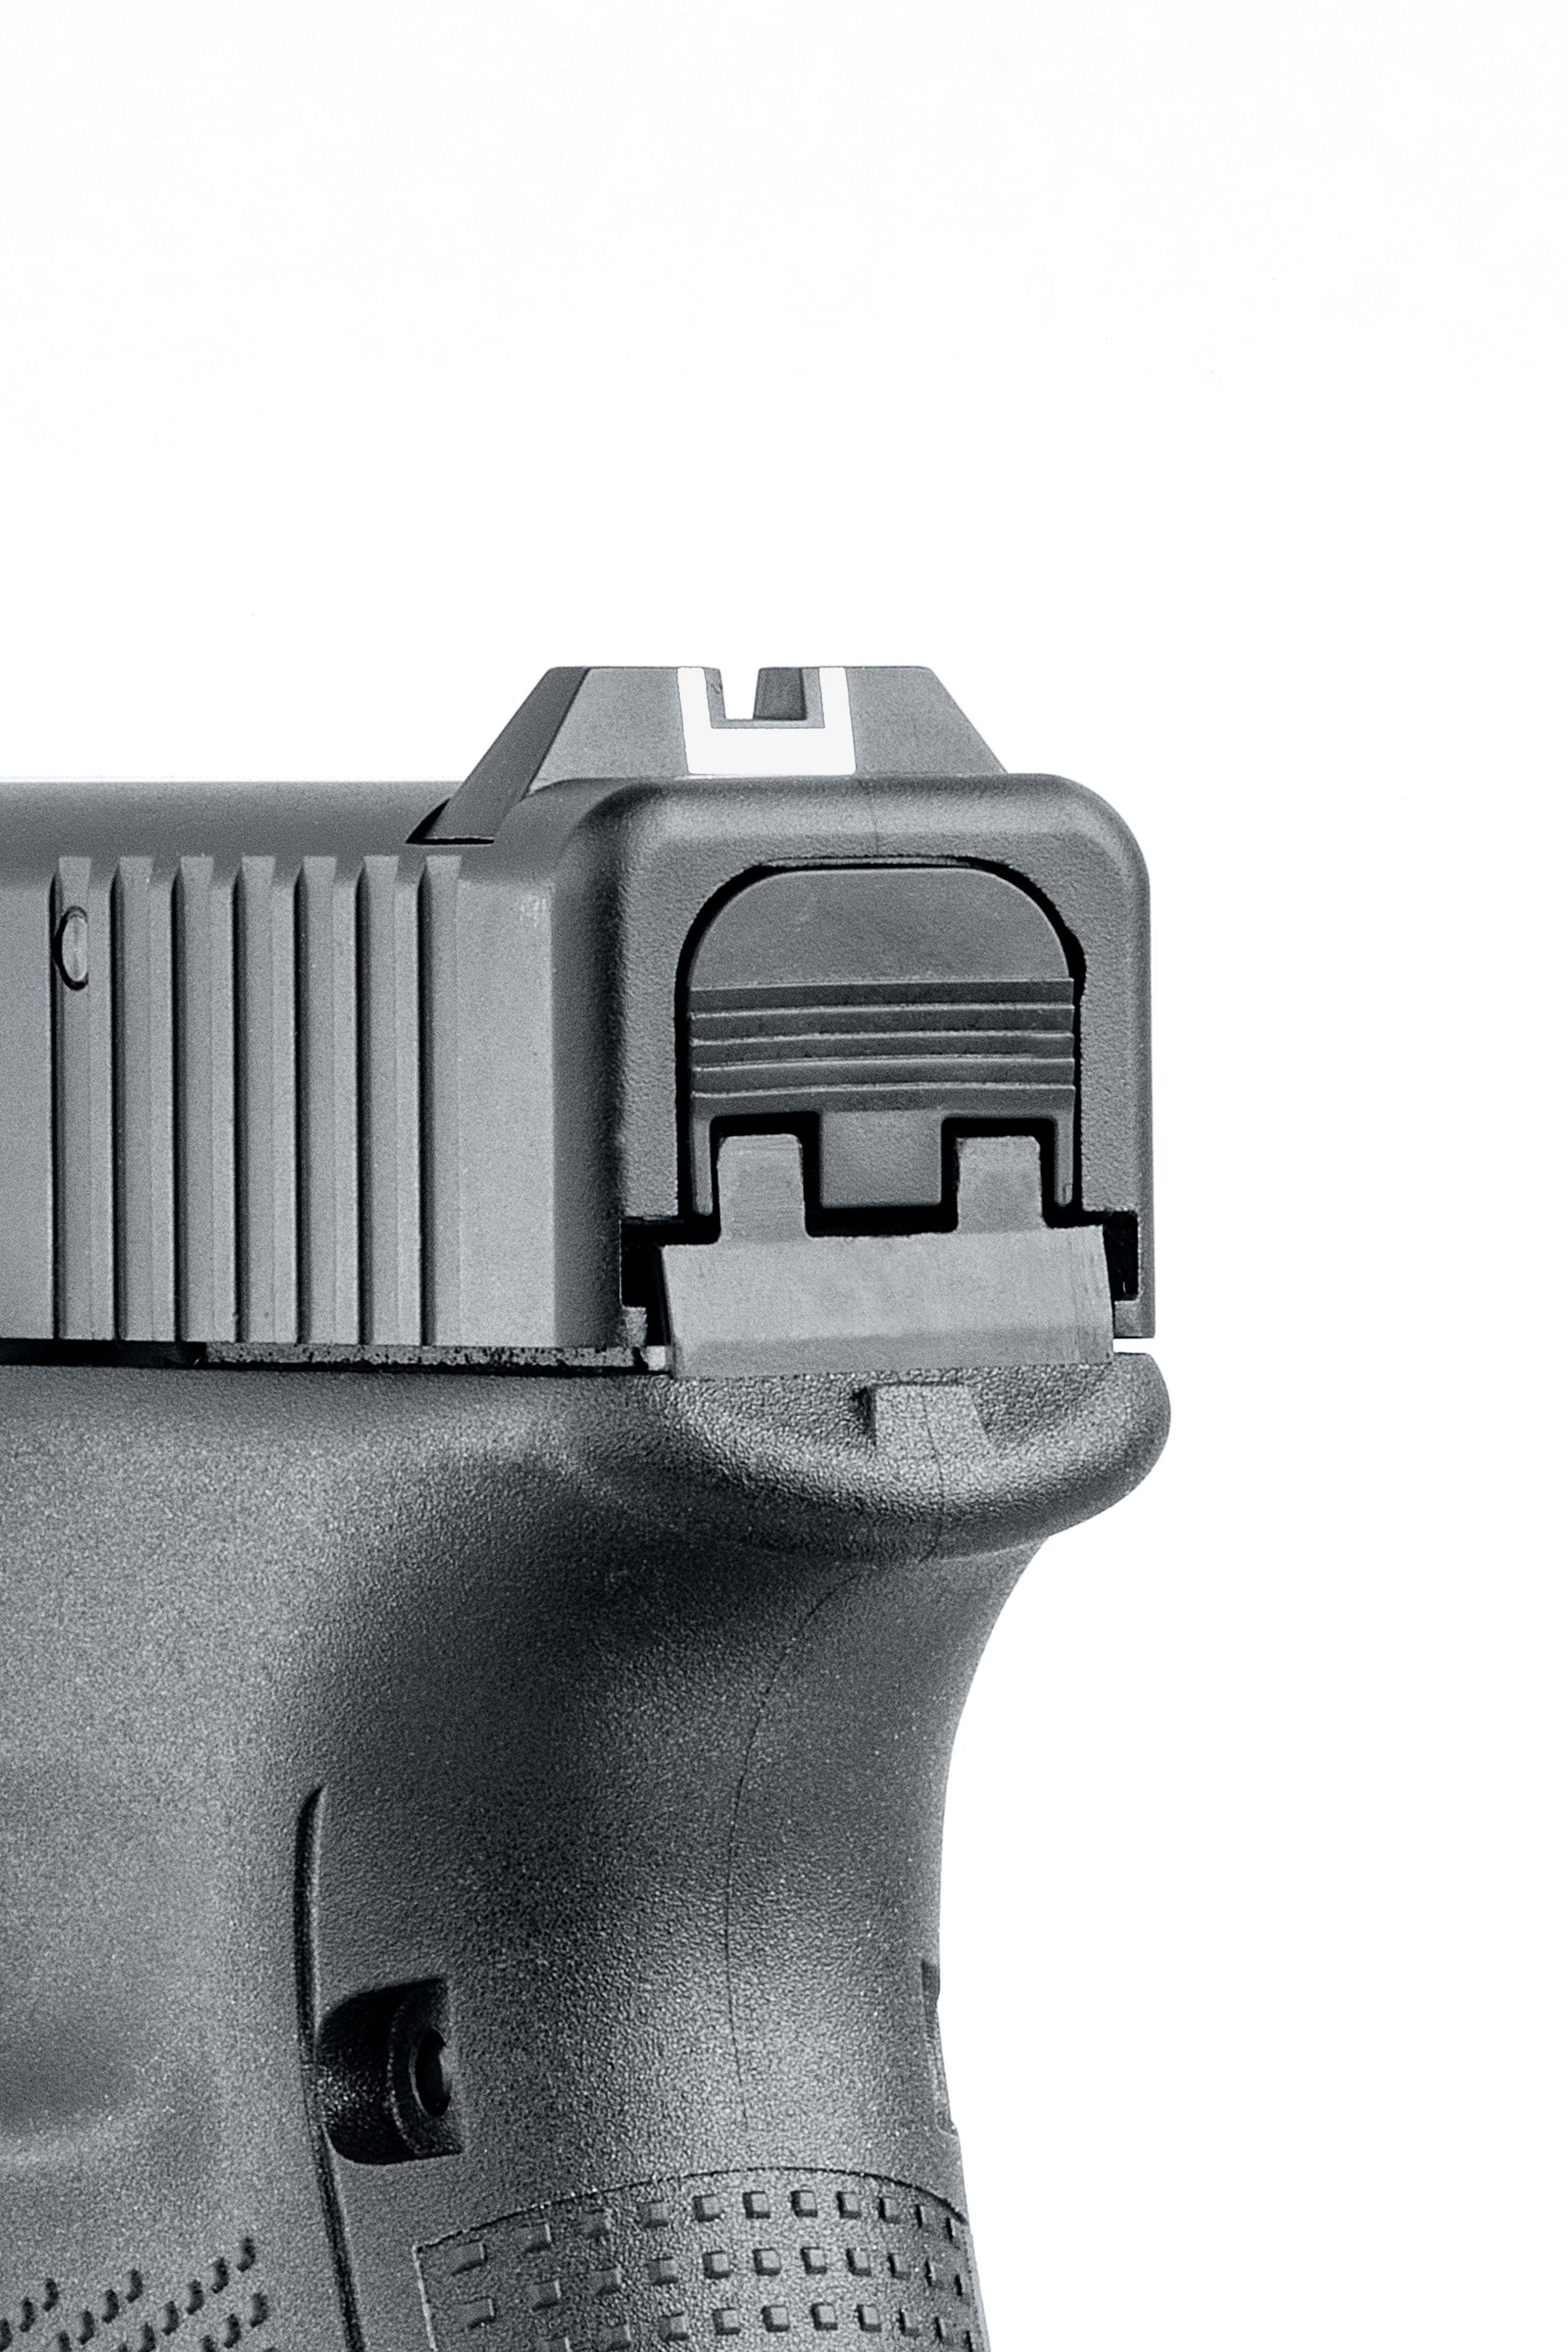 Glock 17 Gen5 9mm P.A.K. Schreckschuss